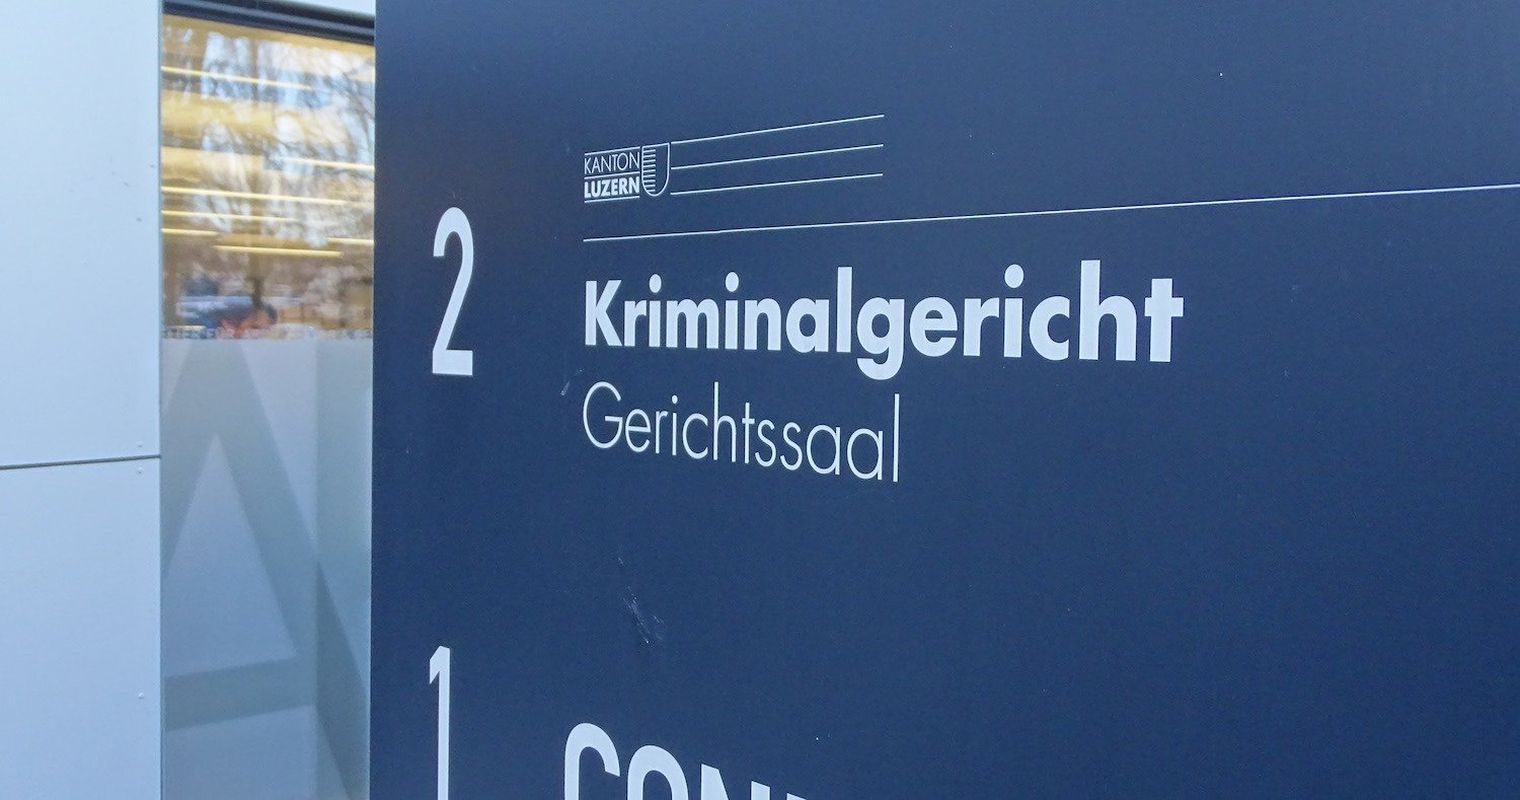 Jetzt steht der mutmassliche Täter des Emmenbrücker Mordes vor Gericht